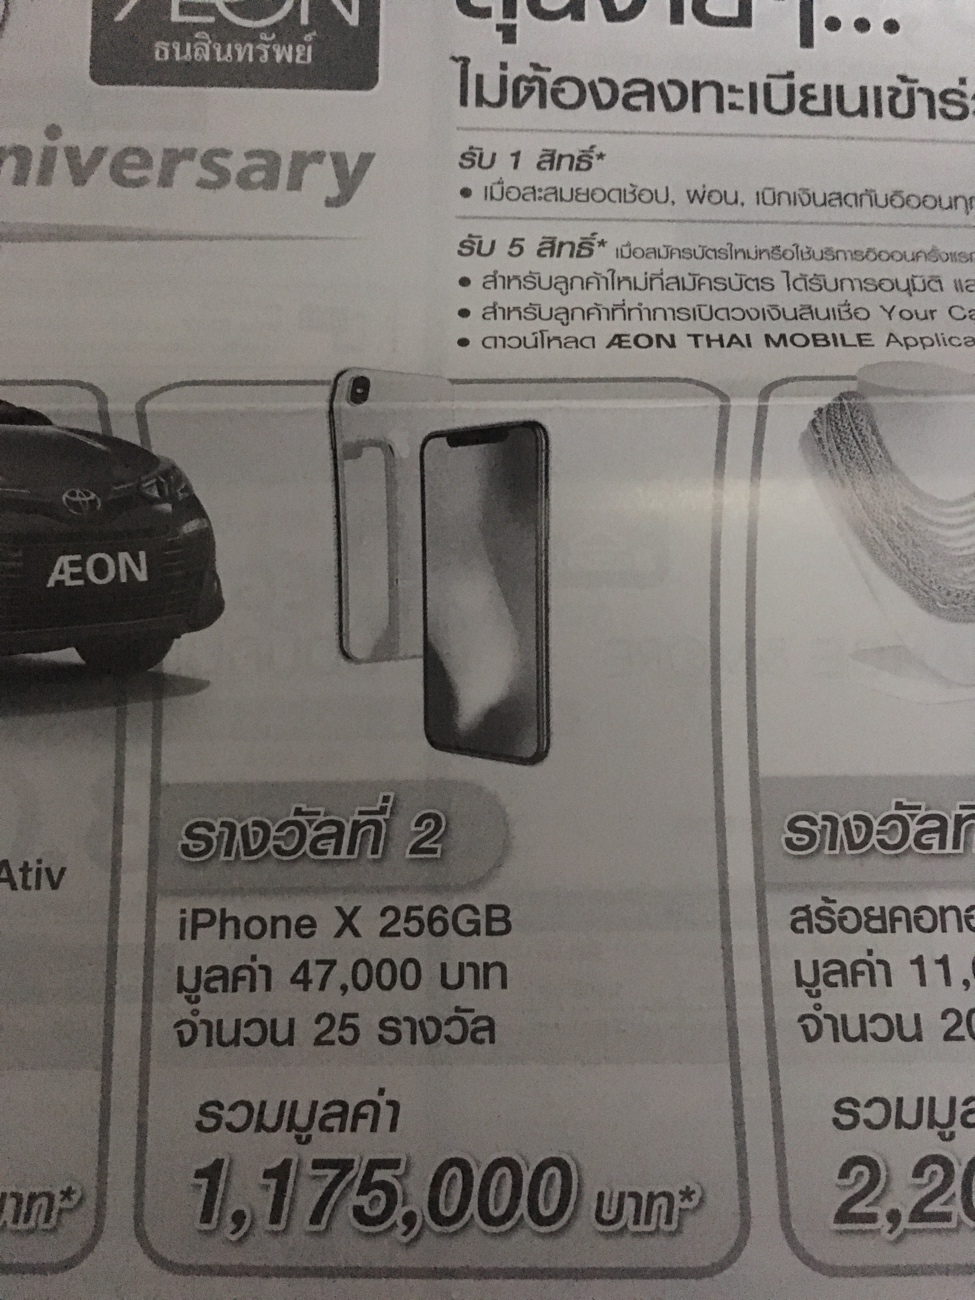 หลุดราคา iPhone X จากใบโบชัวร์ ของ AEON 256 GB 47,000 บาท !!!!!!